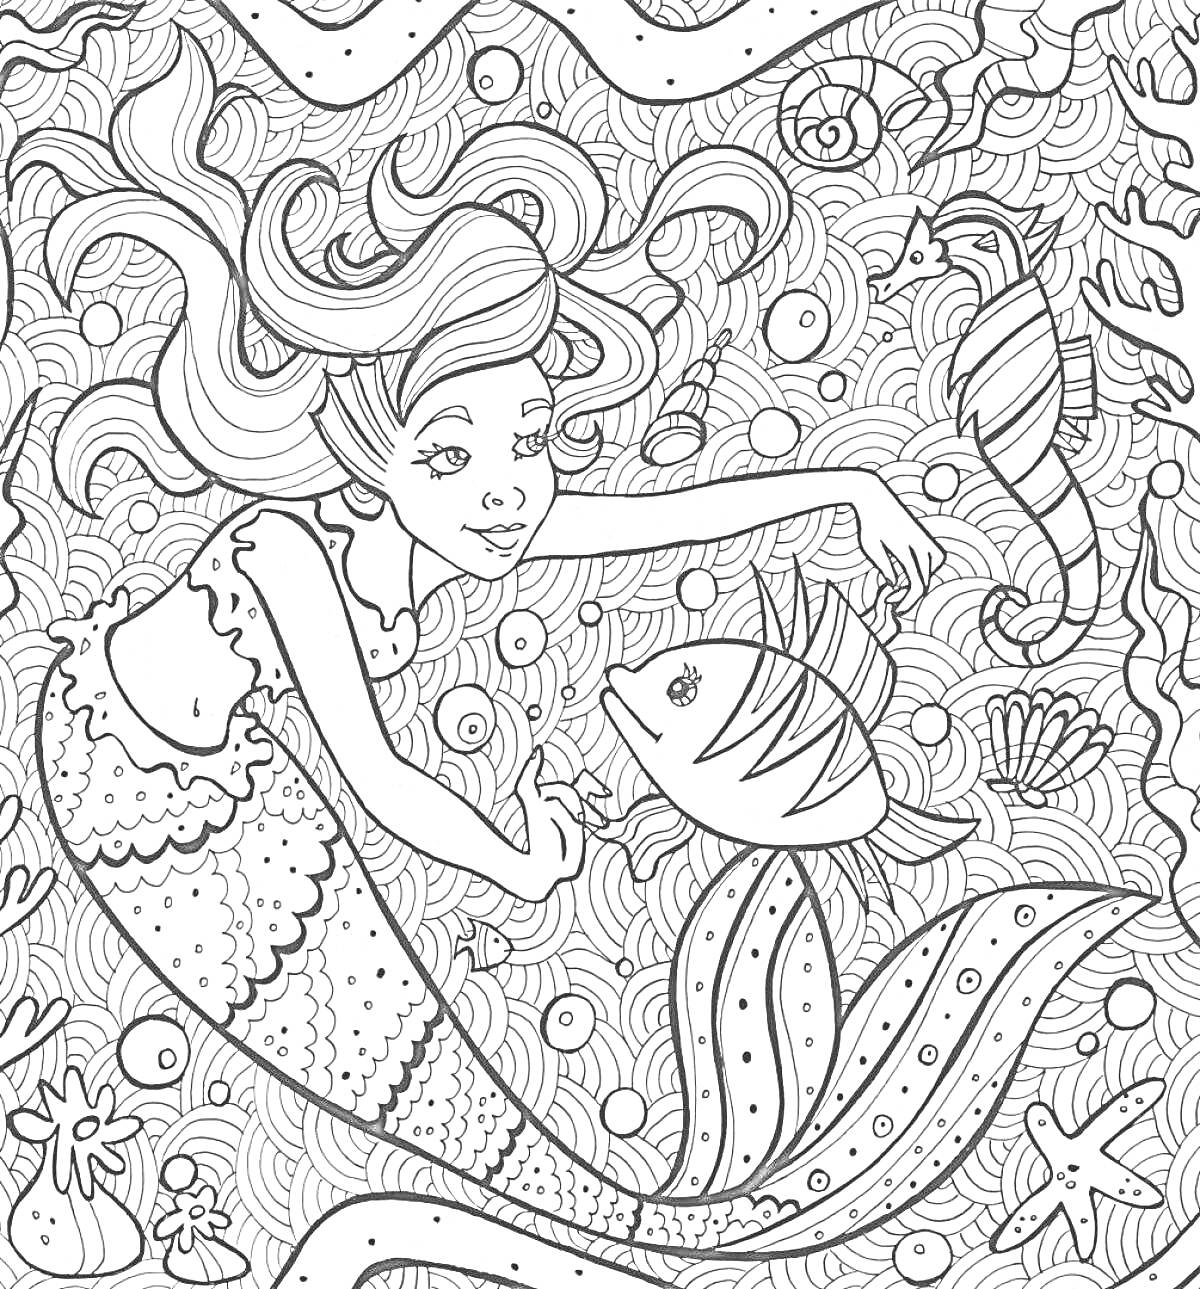 Раскраска Русалка с рыбкой, морским коньком и подводными растениями